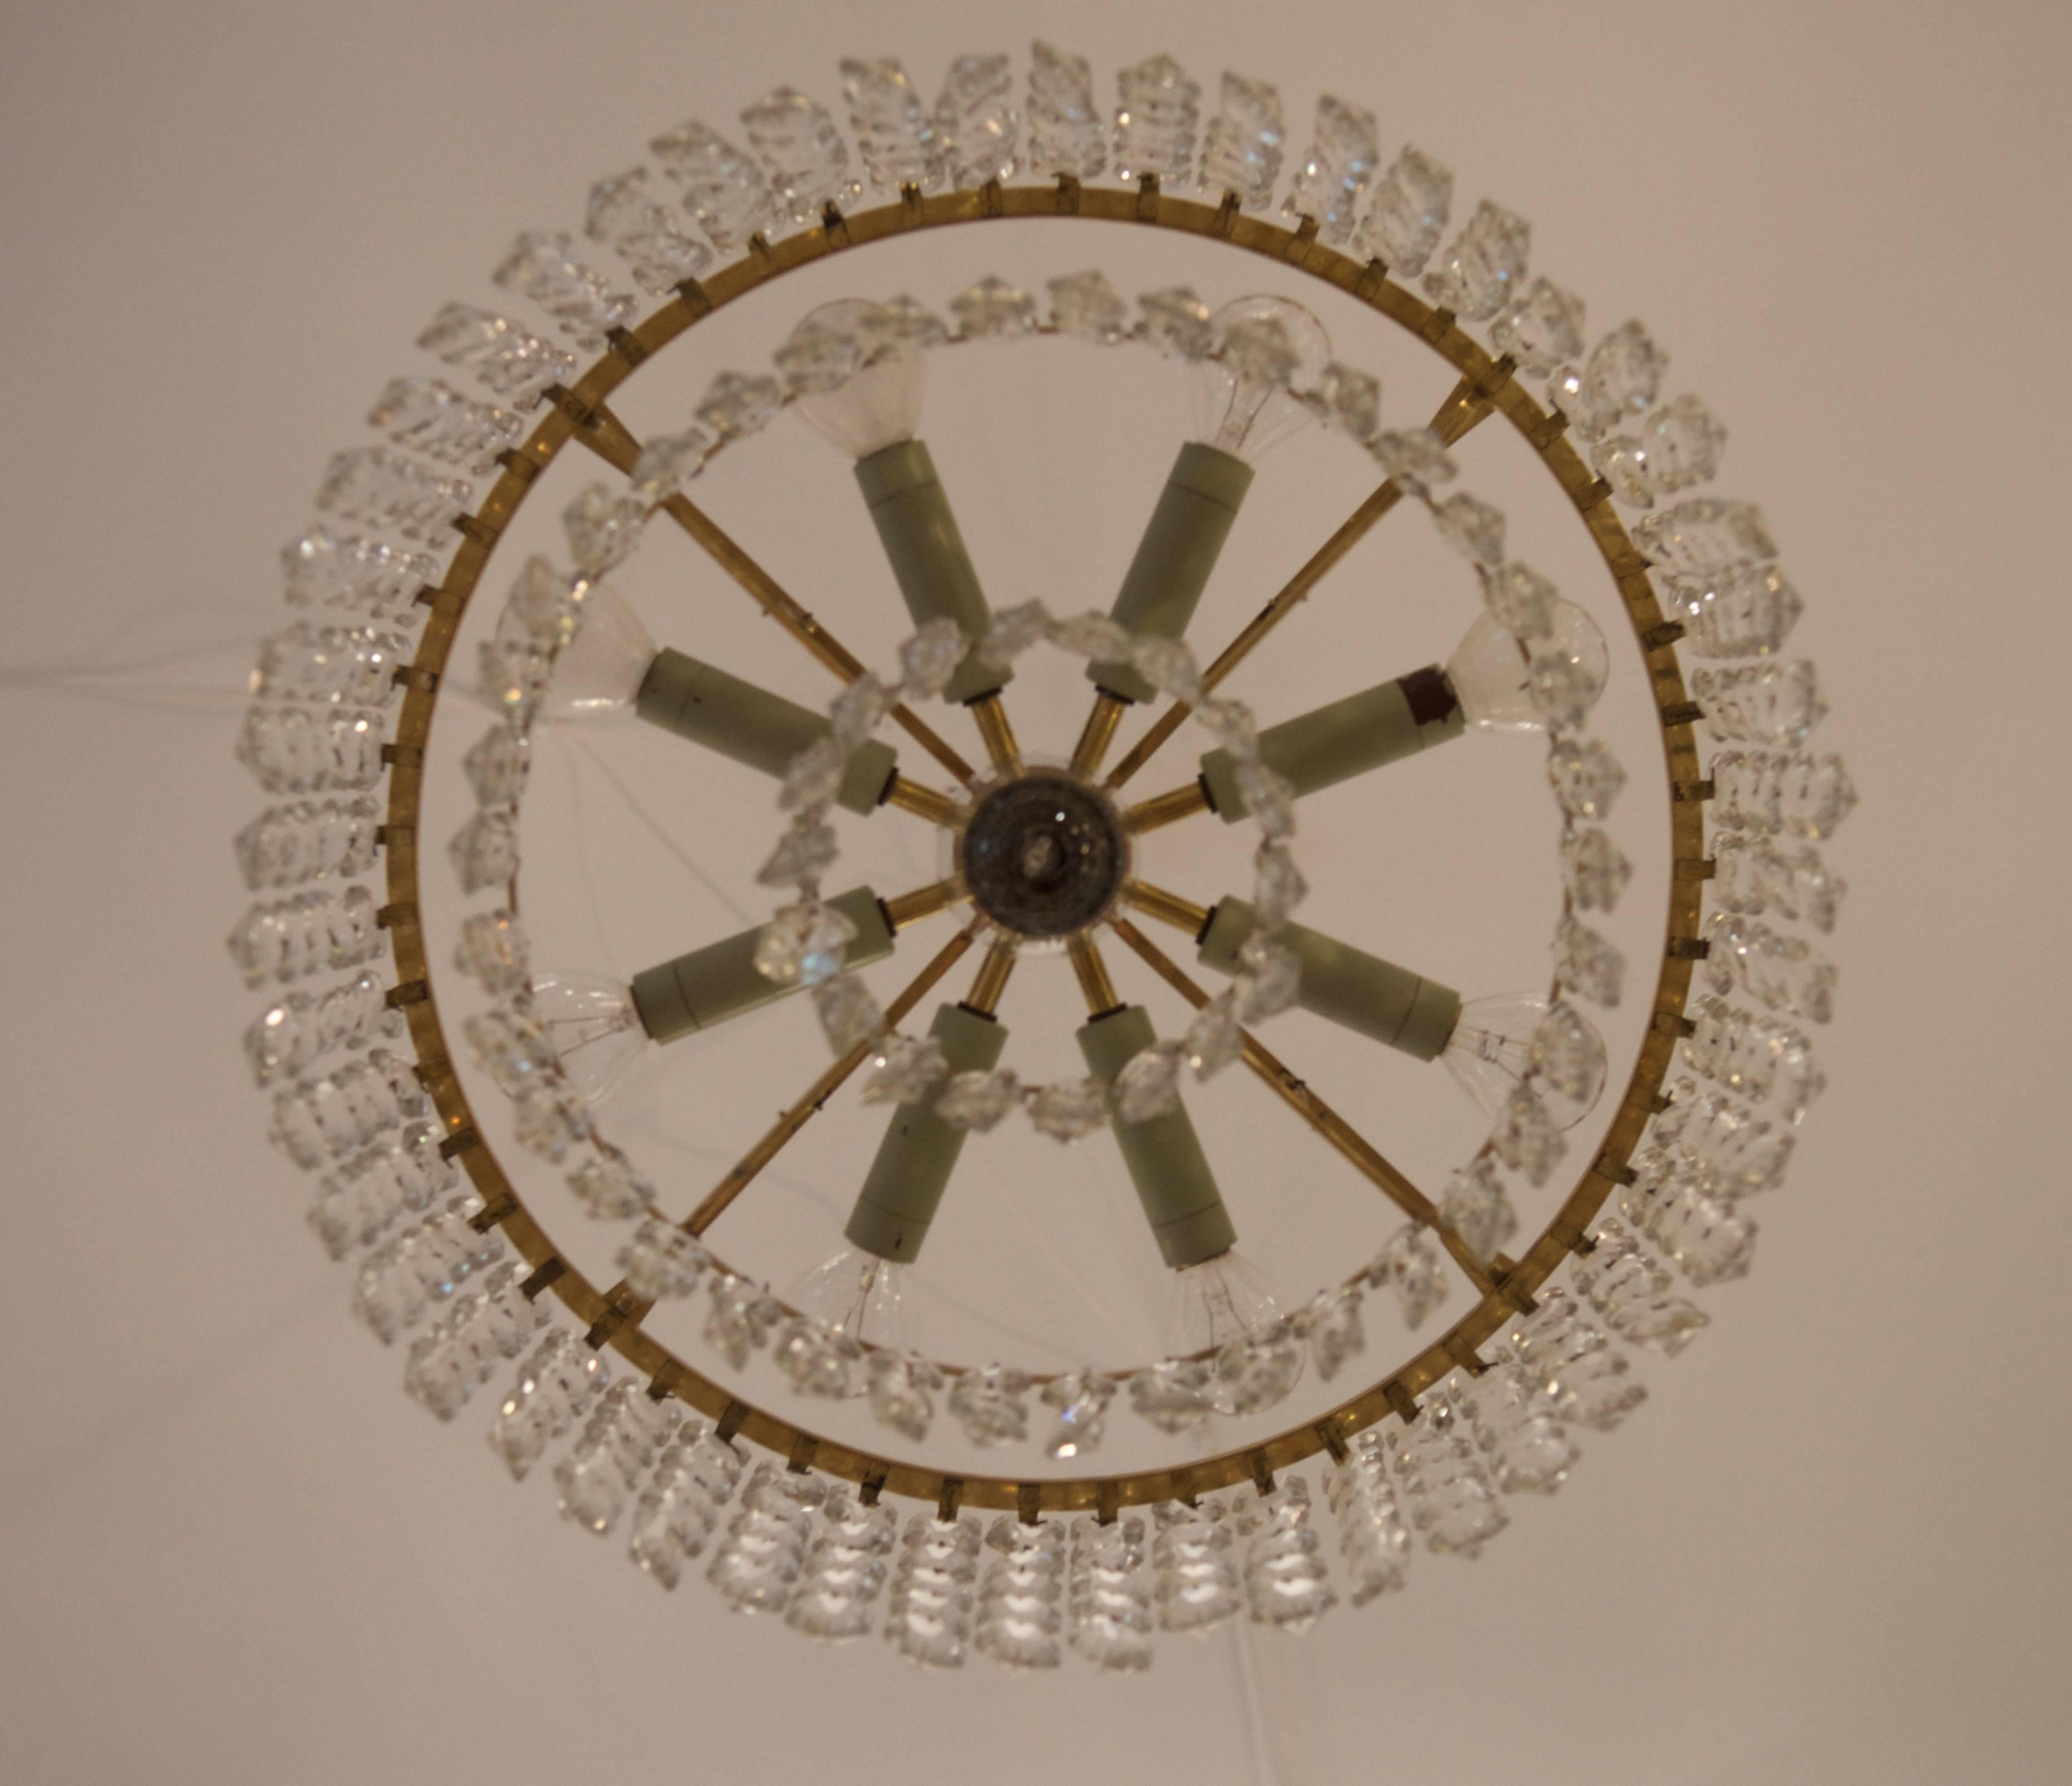 Construction en laiton avec trois anneaux avec des cristaux et neuf lumières.
Vienne des années 1950, signature sur le cadre.
Dimention du lustre seul est : diamètre 44cm (17.32in) x 20cm (7.87in) hauteur.